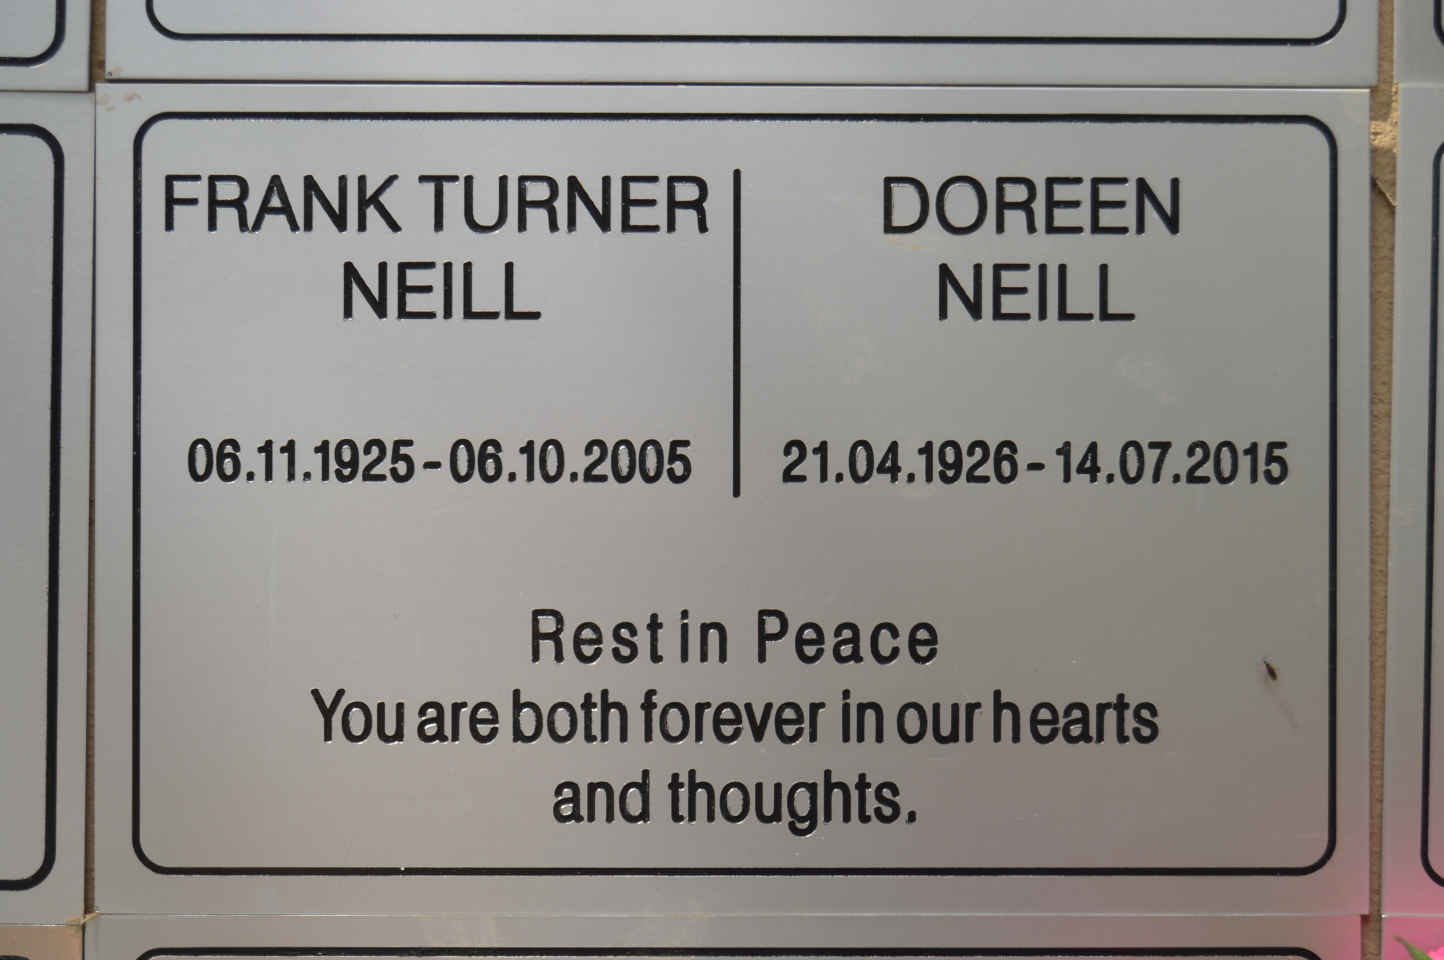 NEILL Frank Turner 1925-2005 & Doreen 1926-2015